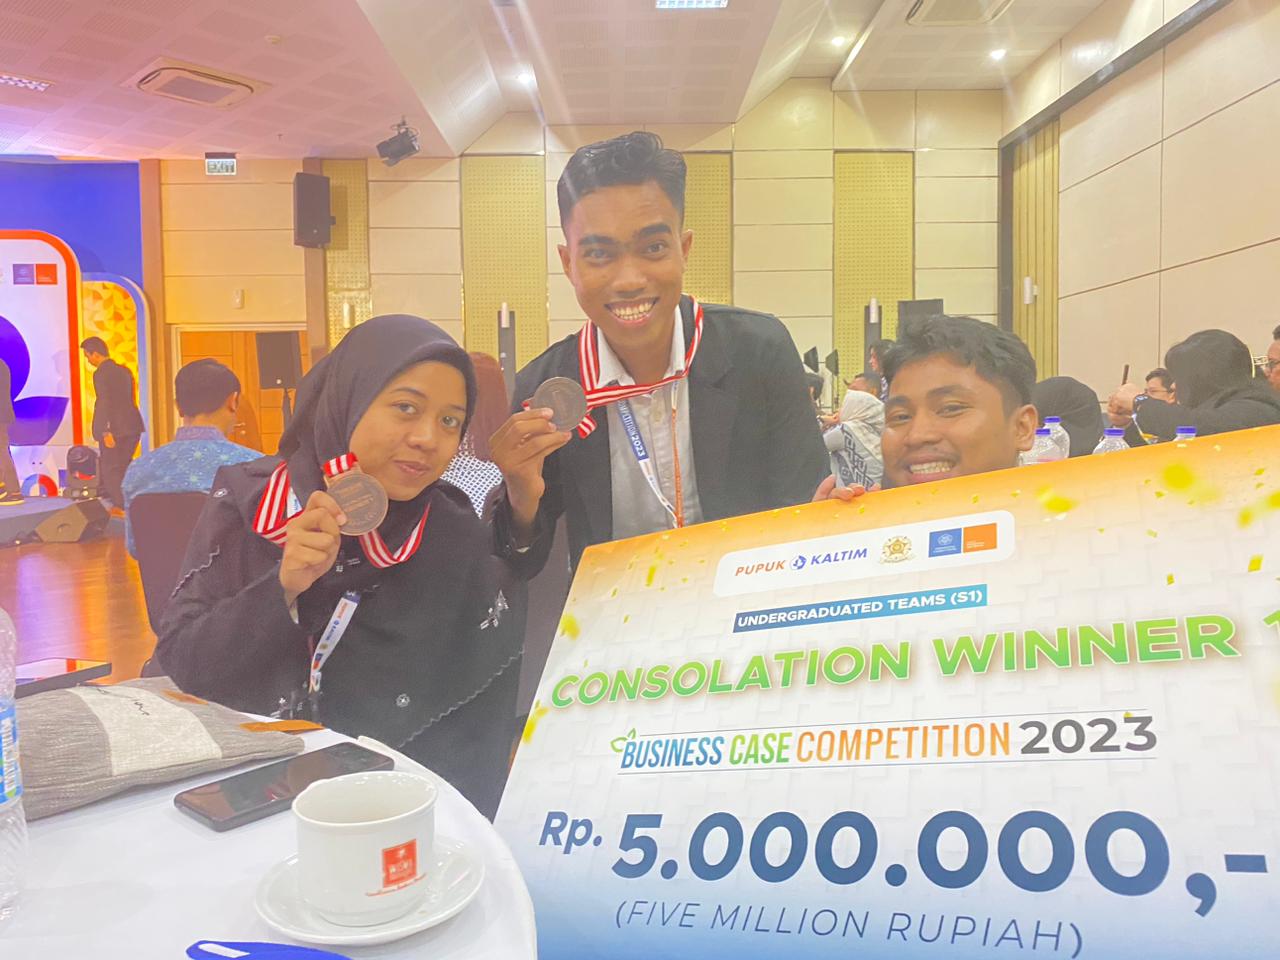 Mahasiswa Jurusan Manajemen berhasil menjadi Consolation Winner 1 dalam Business Case Competition 2023 UGM